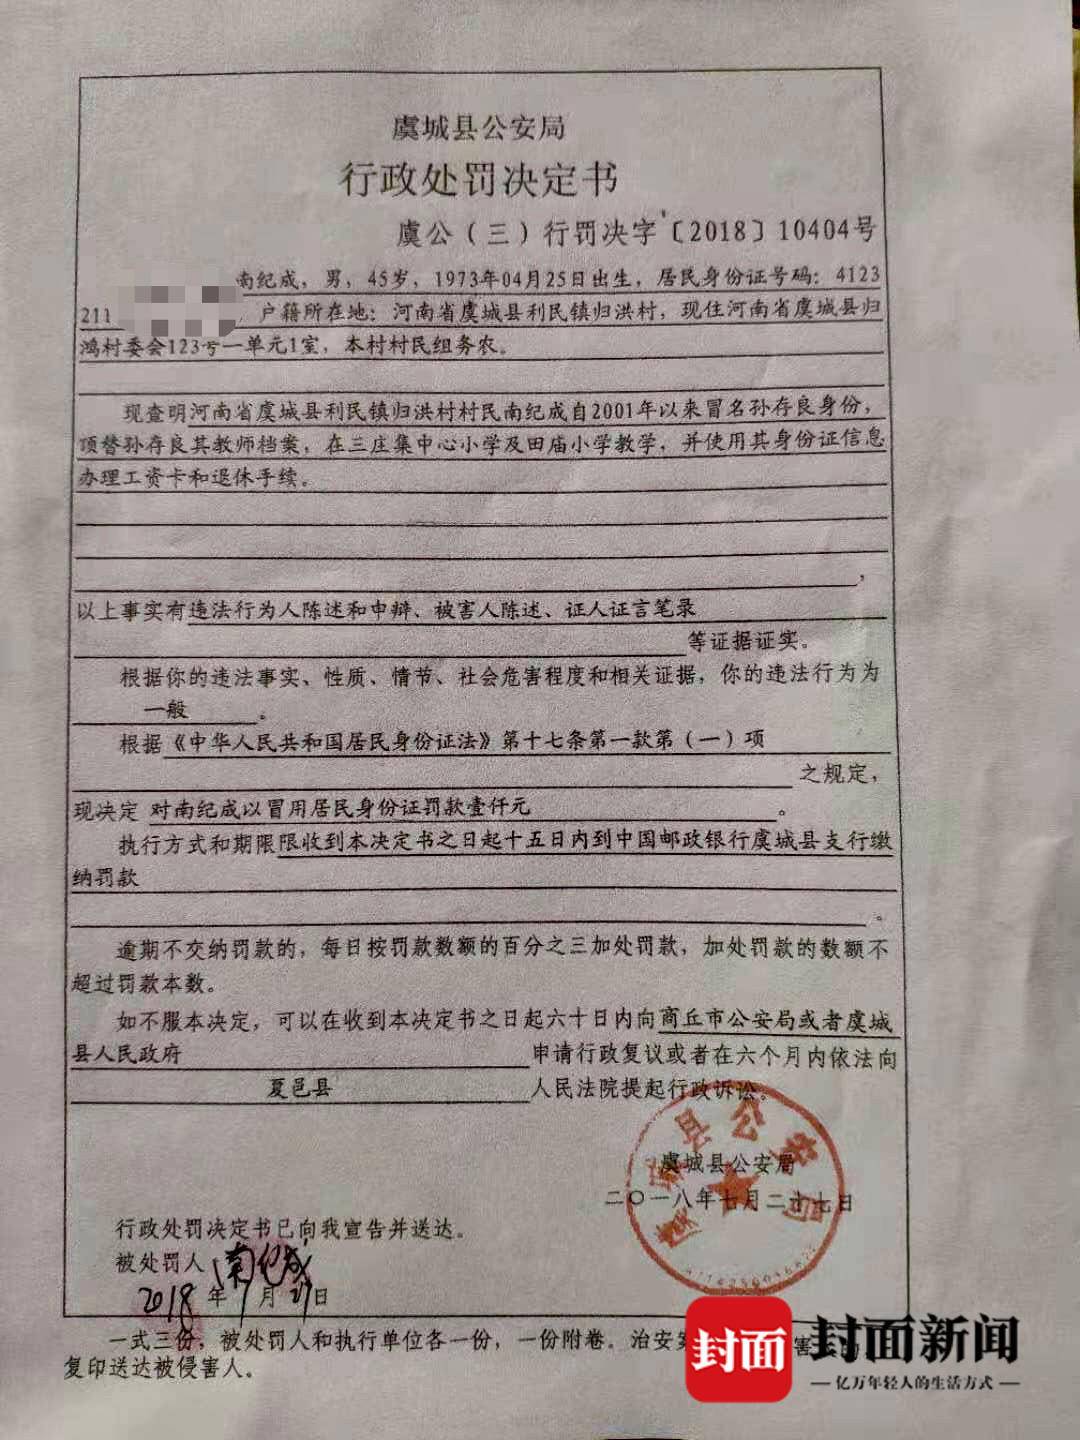  虞城县公安局2018年出具的行政处罚决定书